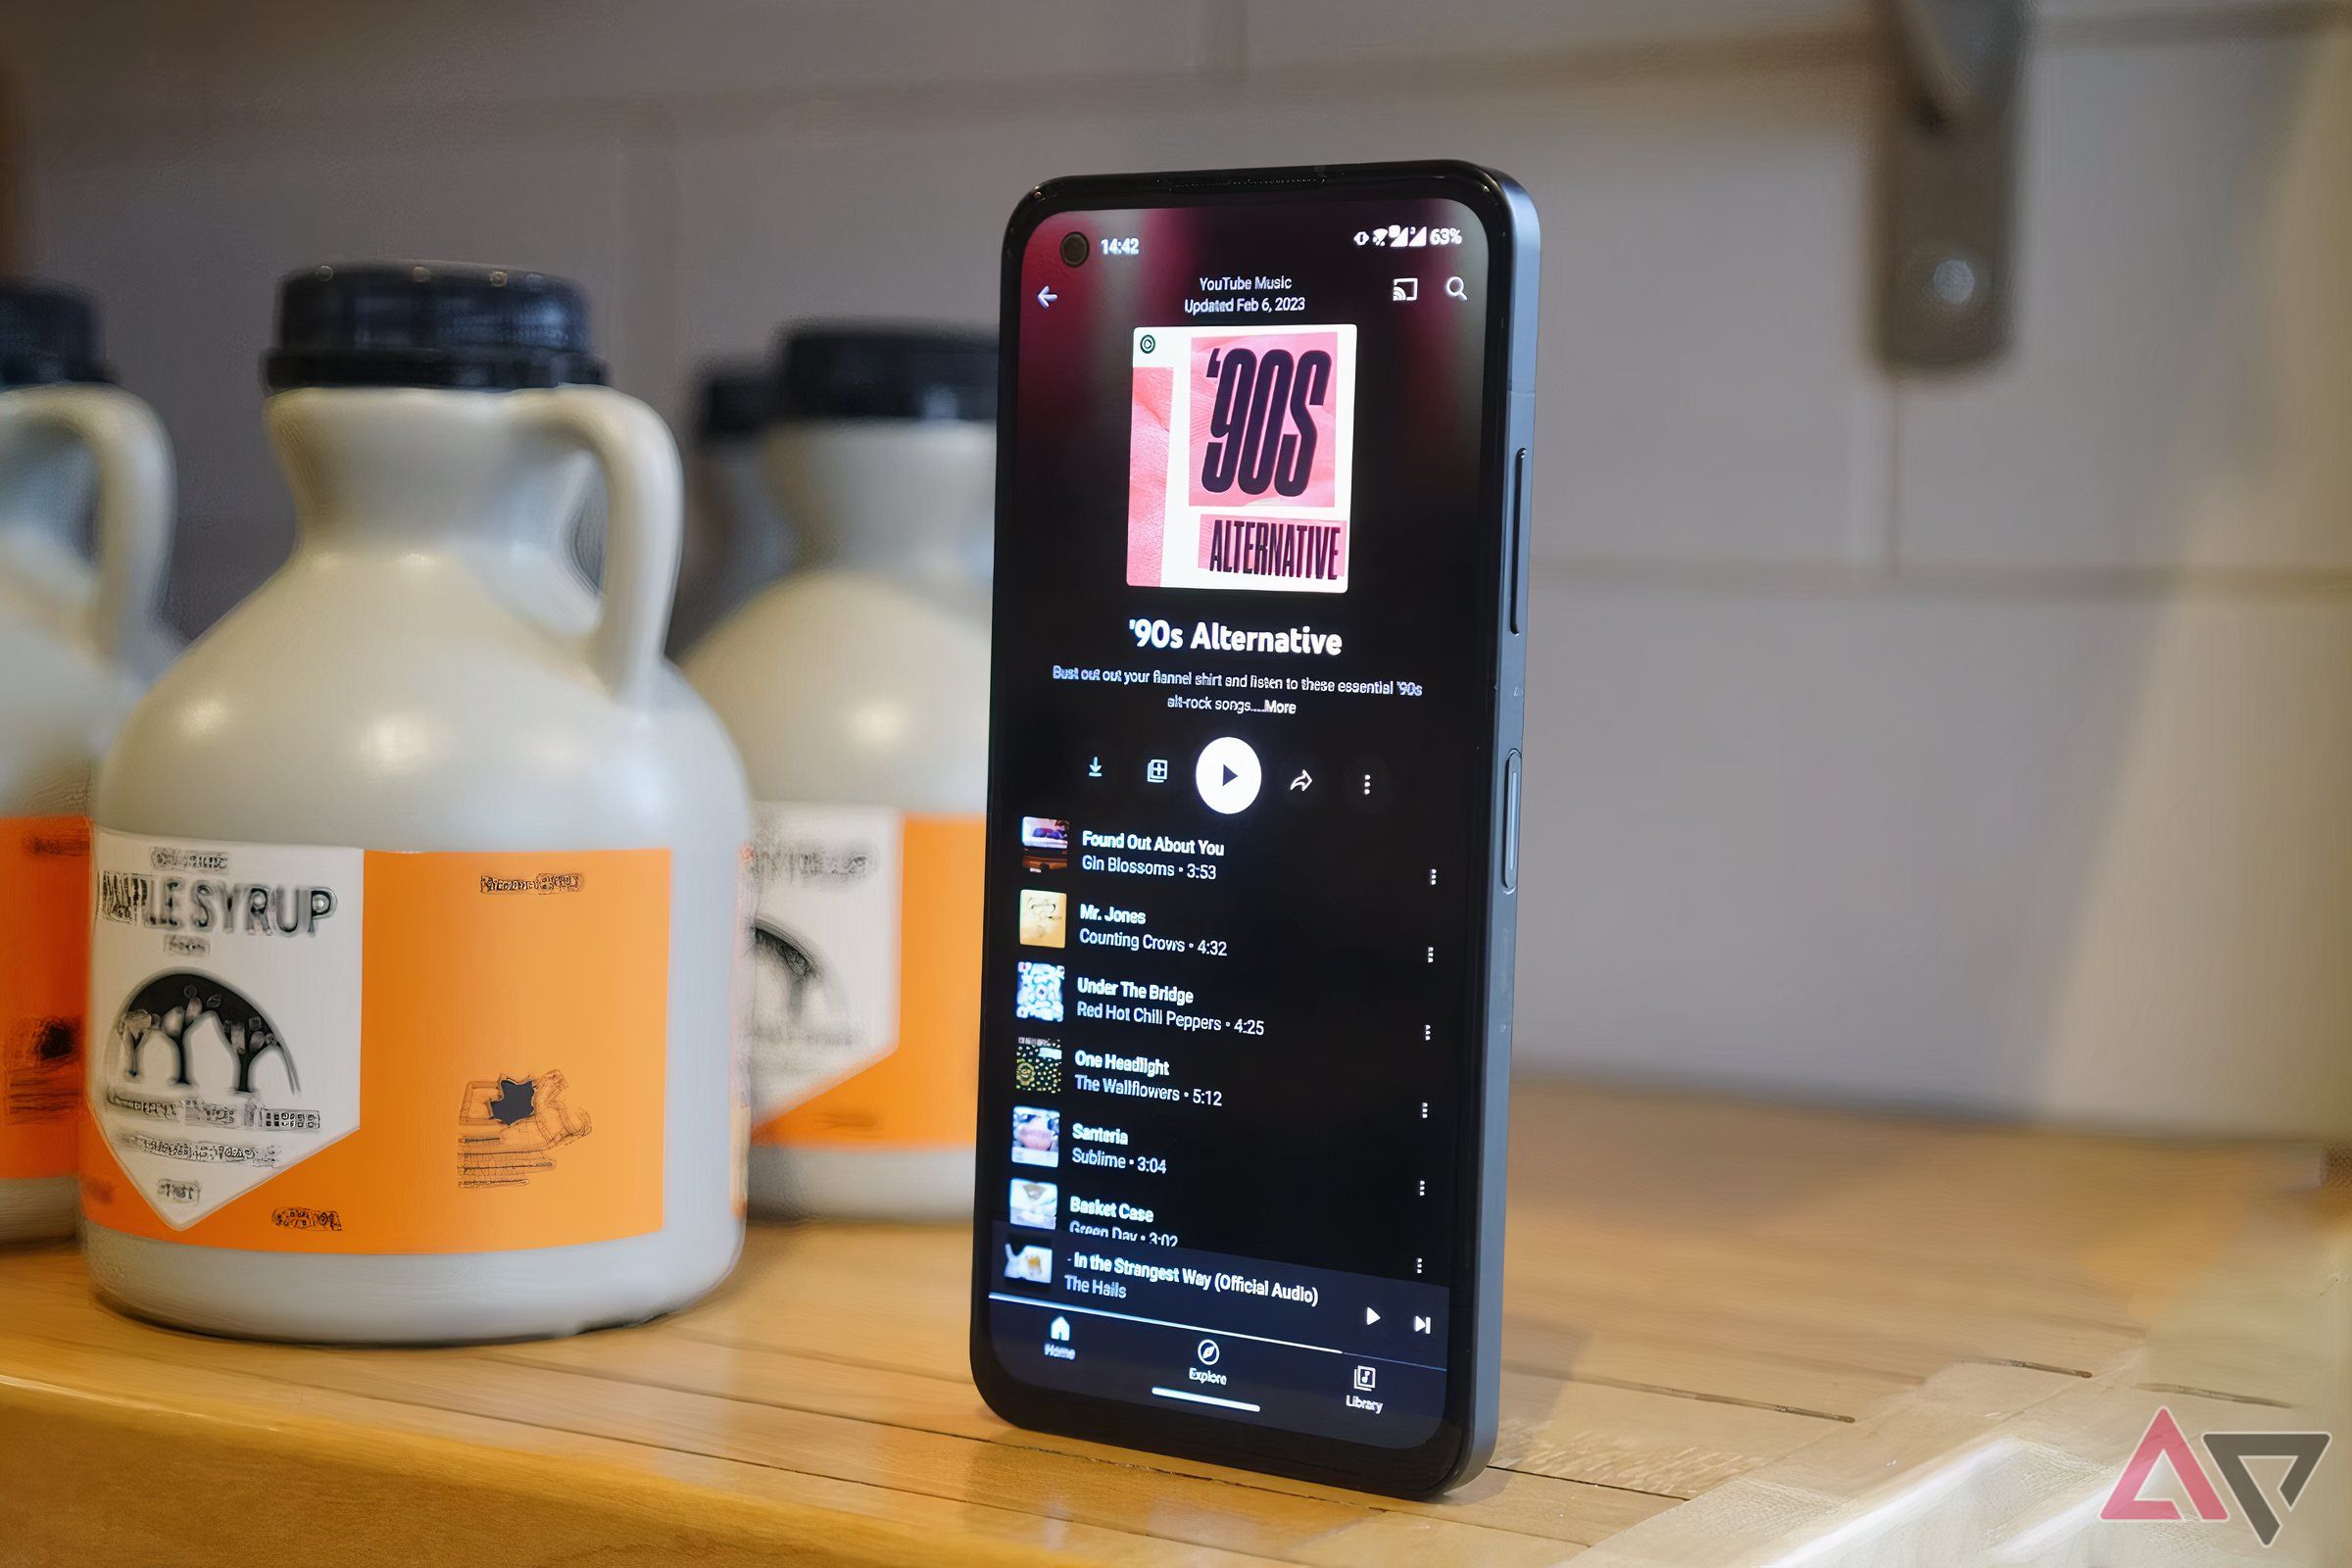 Tela de um smartphone mostrando uma playlist do YouTube Music.